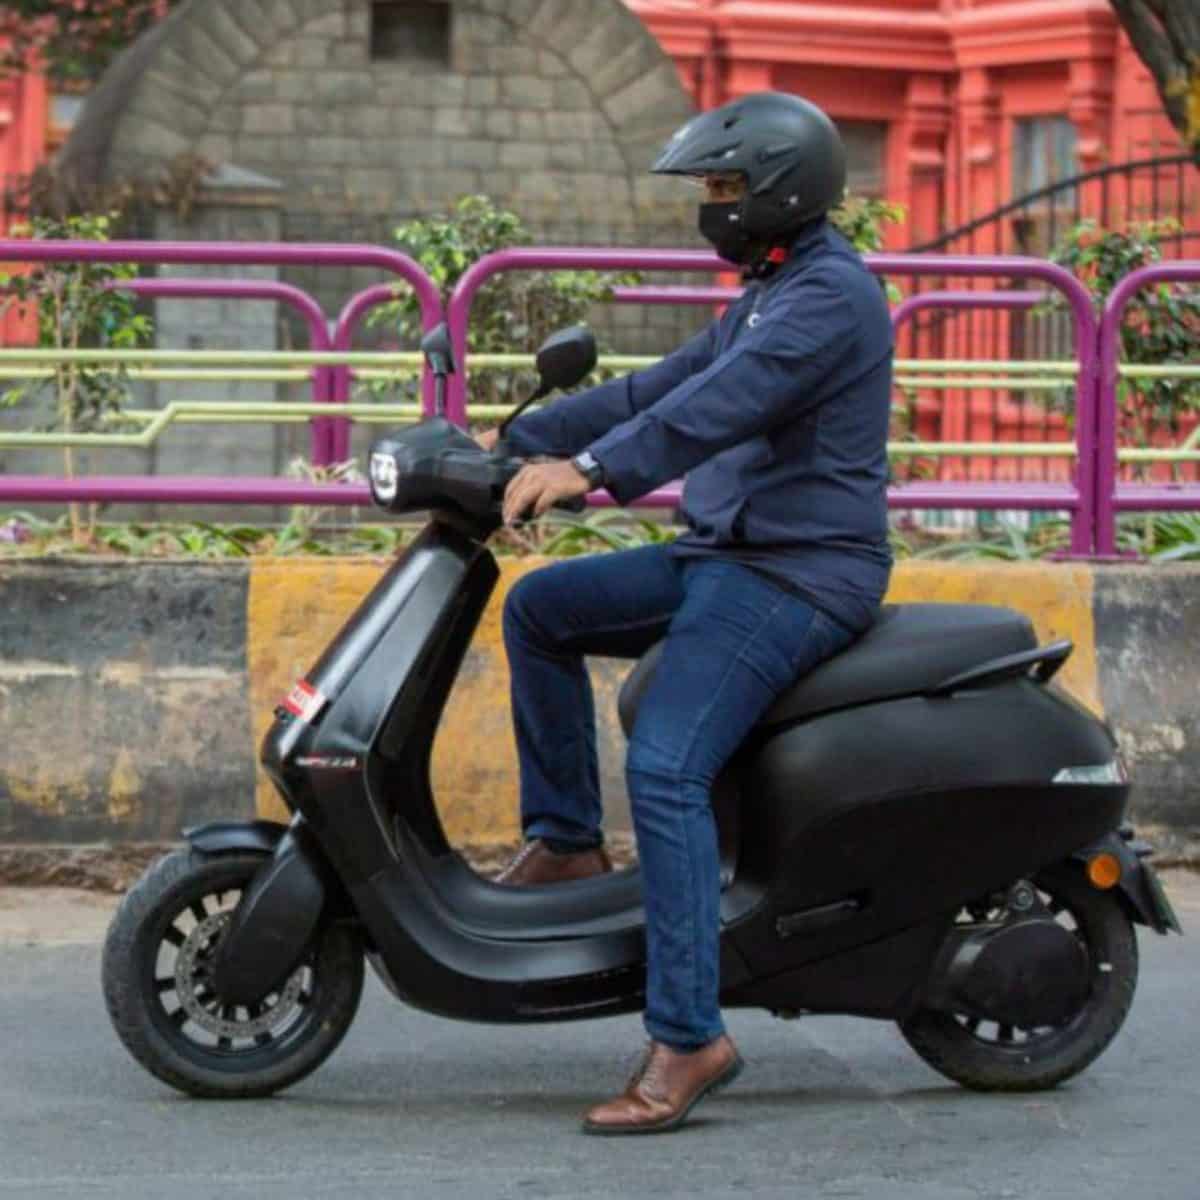 Ola Electric Scooter का नया धमाका, 24 घंटे में 1 लाख स्कूटर की बुकिंग कर चौंकाया